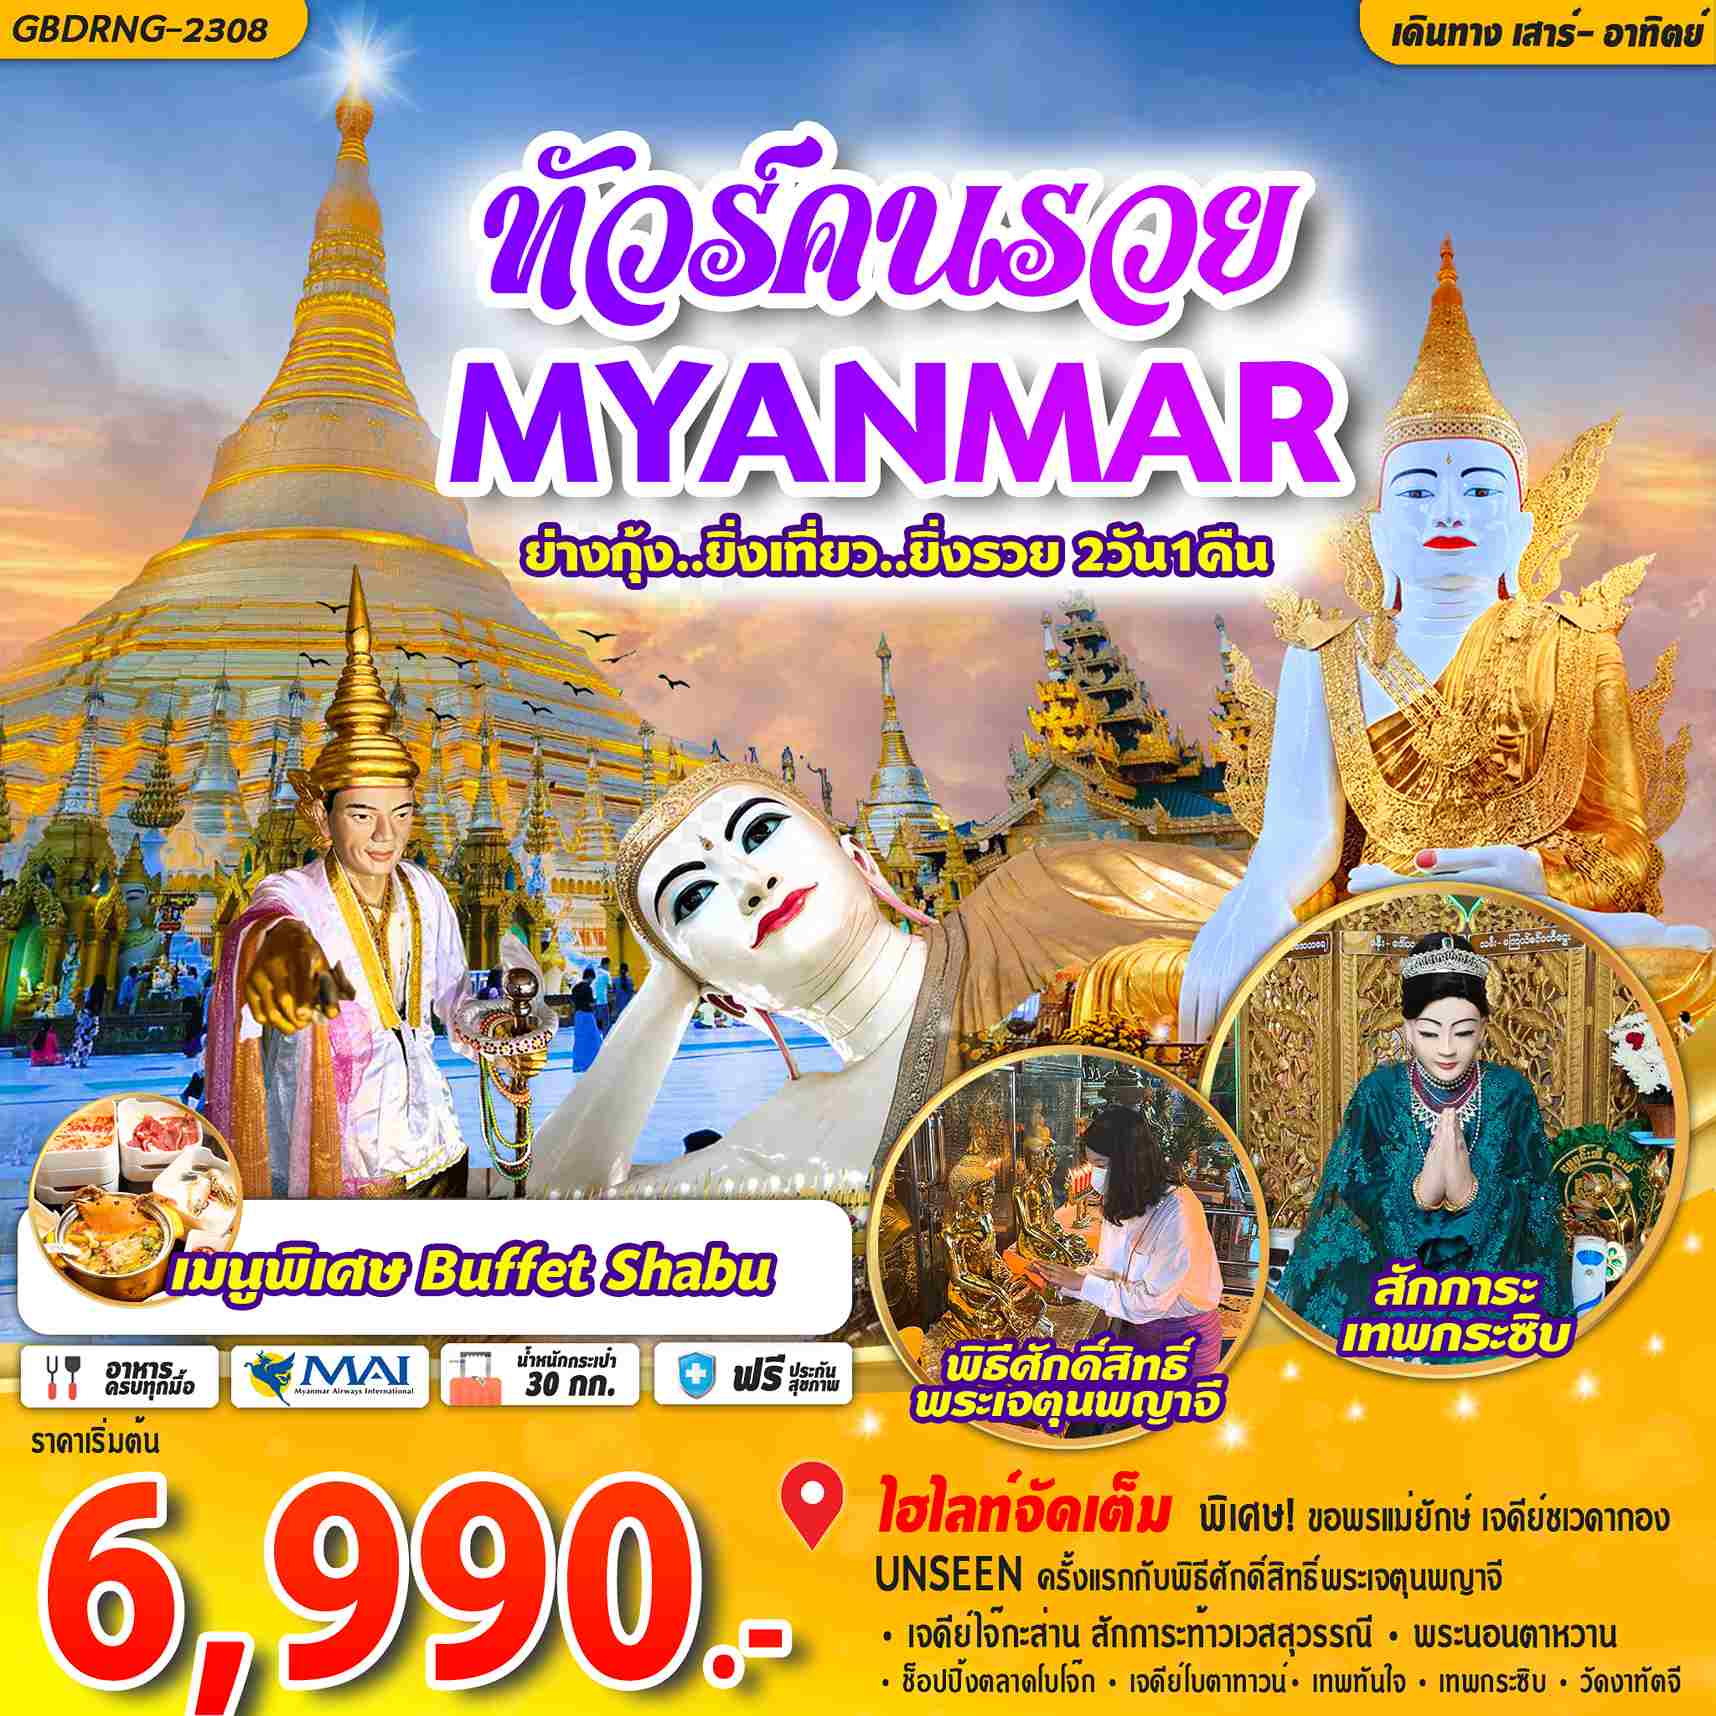 ทัวร์พม่า AMM122-01 ทัวร์คนรวย พม่า ย่างกุ้ง (281266)